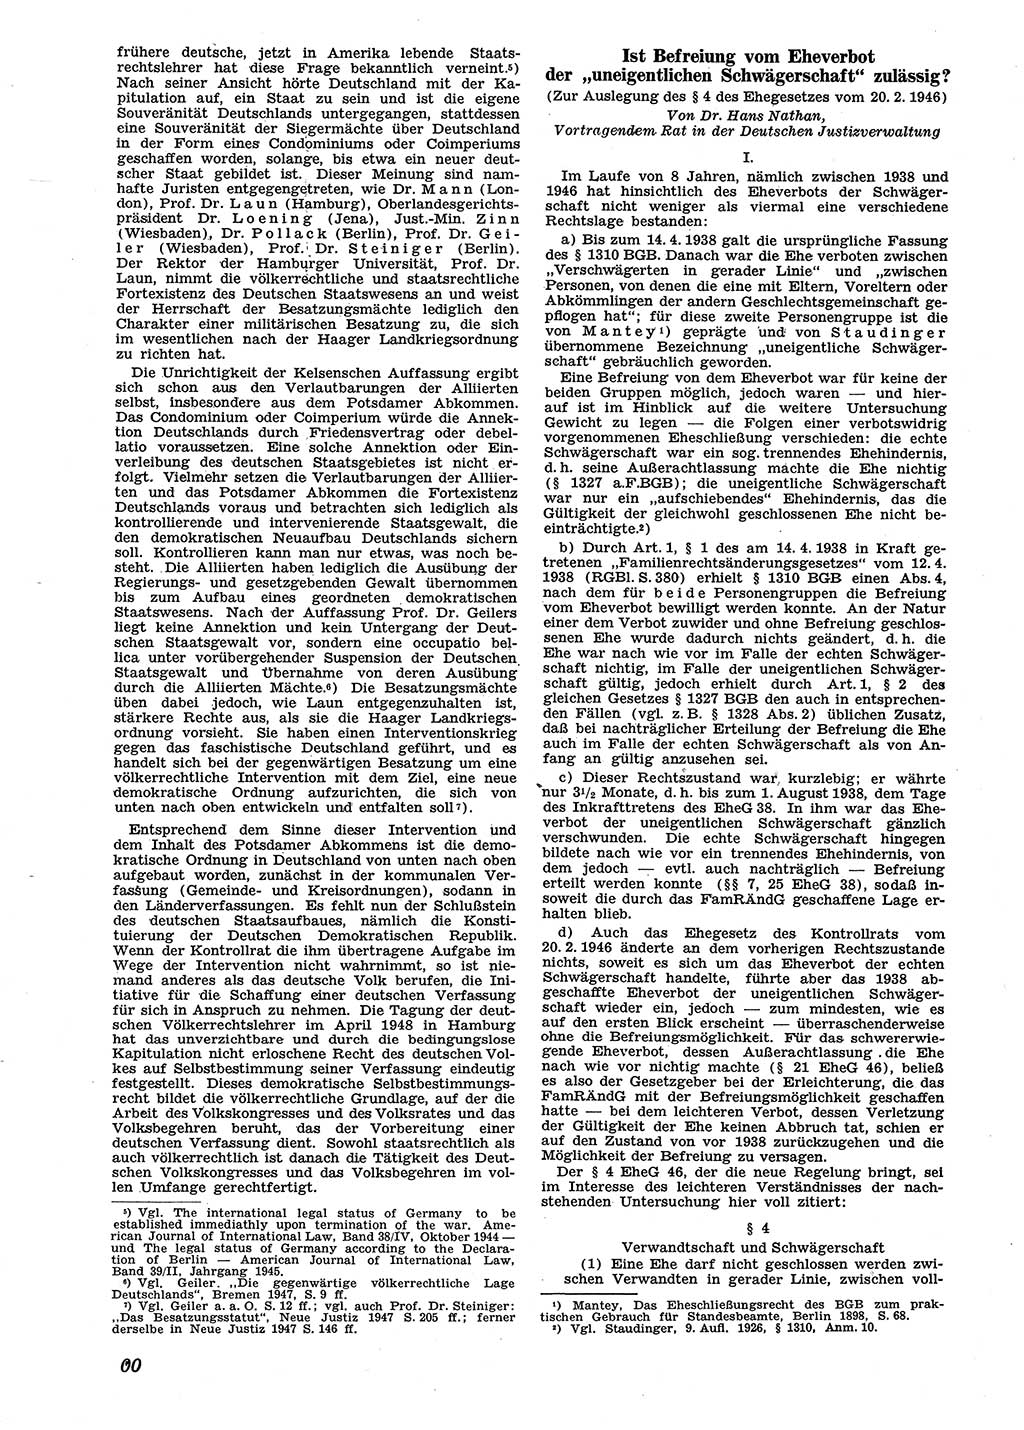 Neue Justiz (NJ), Zeitschrift für Recht und Rechtswissenschaft [Sowjetische Besatzungszone (SBZ) Deutschland], 2. Jahrgang 1948, Seite 100 (NJ SBZ Dtl. 1948, S. 100)